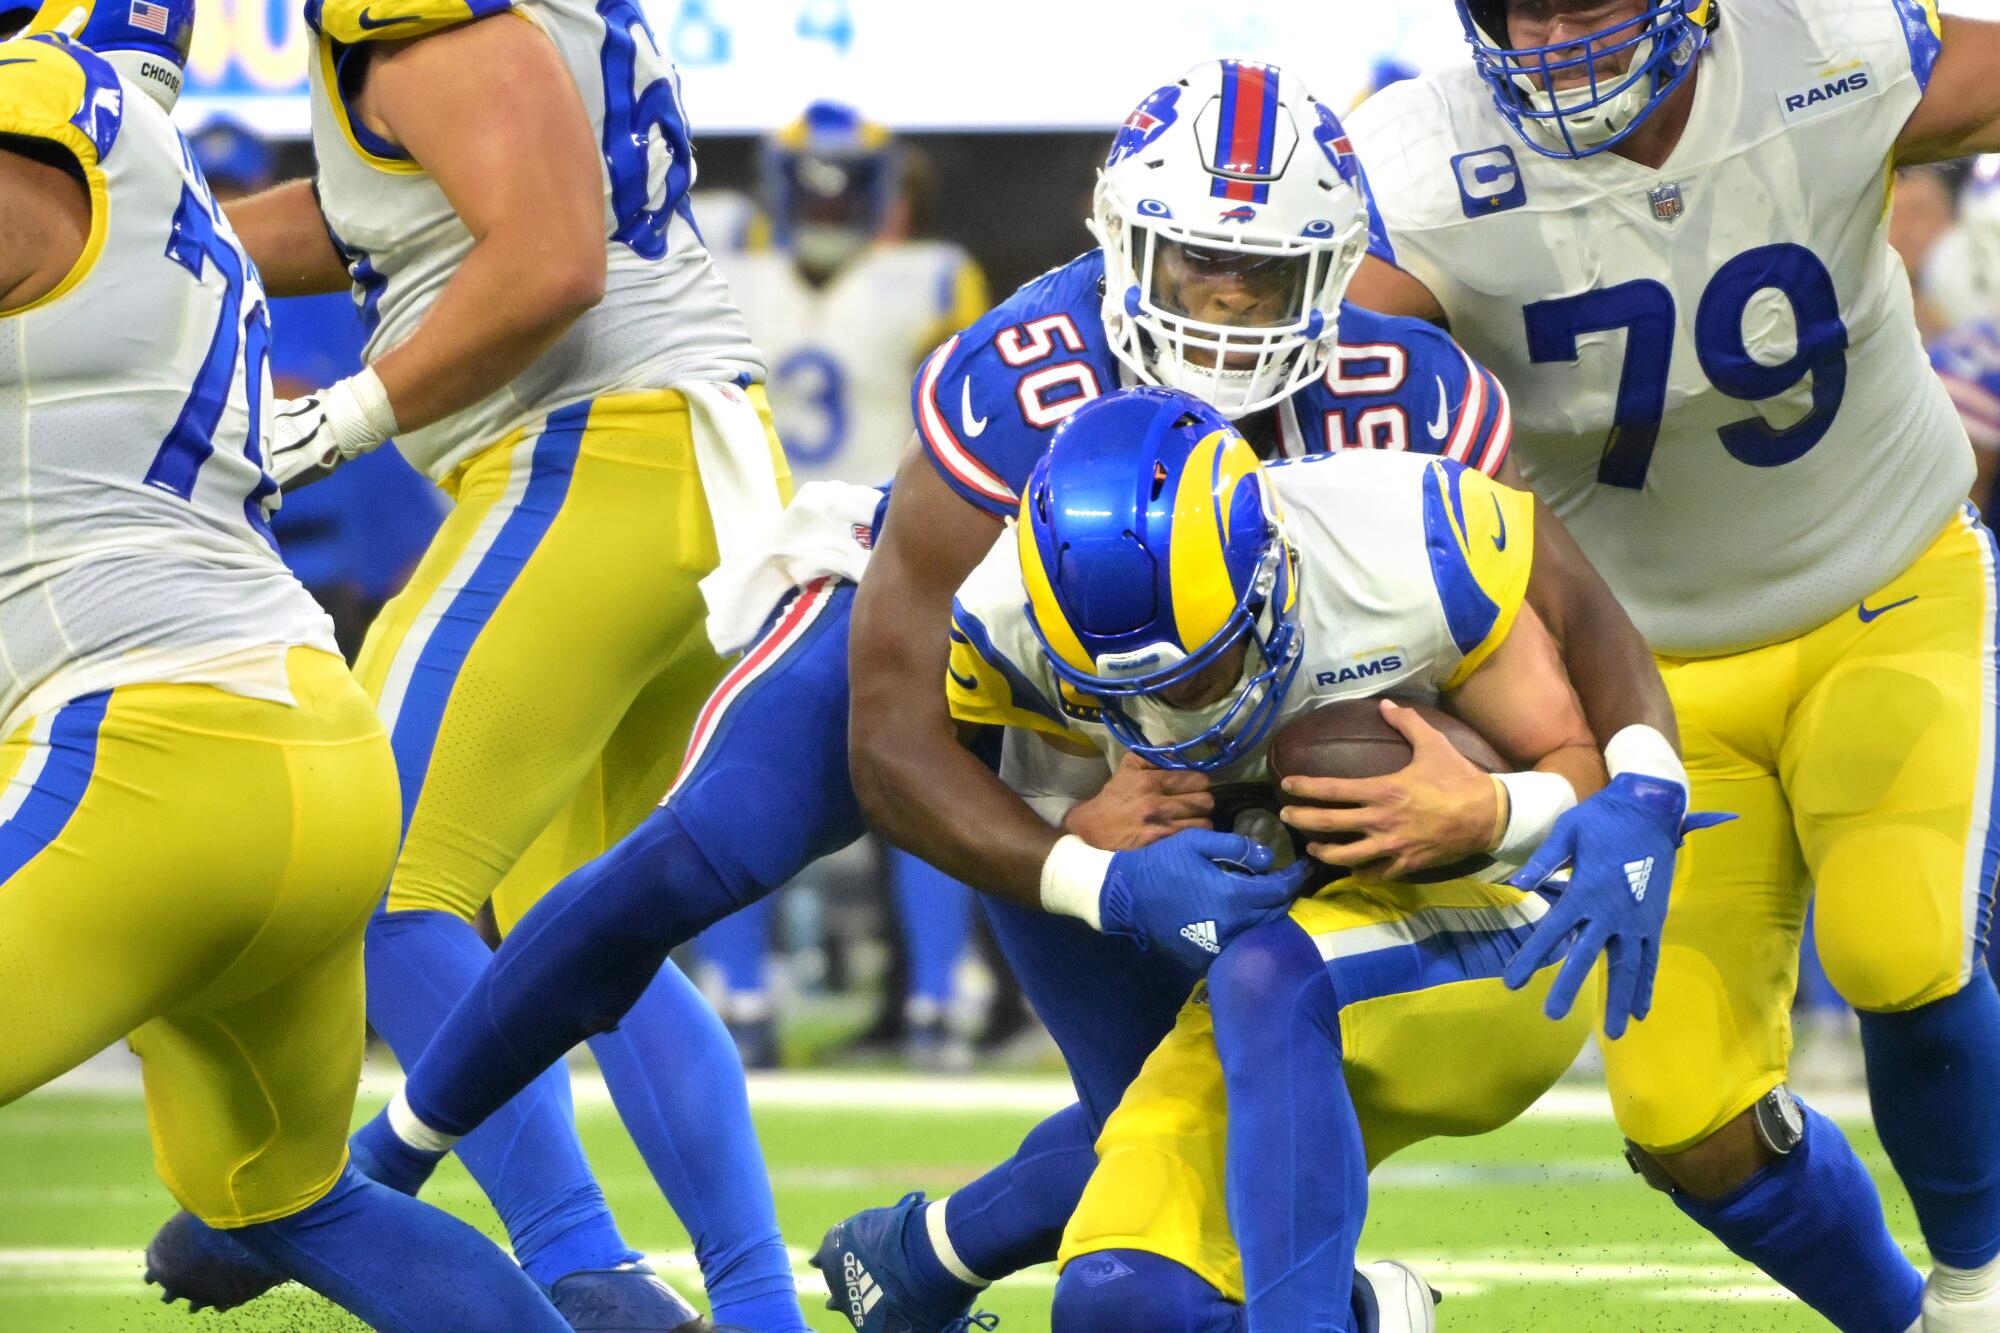 Thursday, Sept. 8: It Begins! Bills vs. Rams in NFL Season Kickoff on NBC